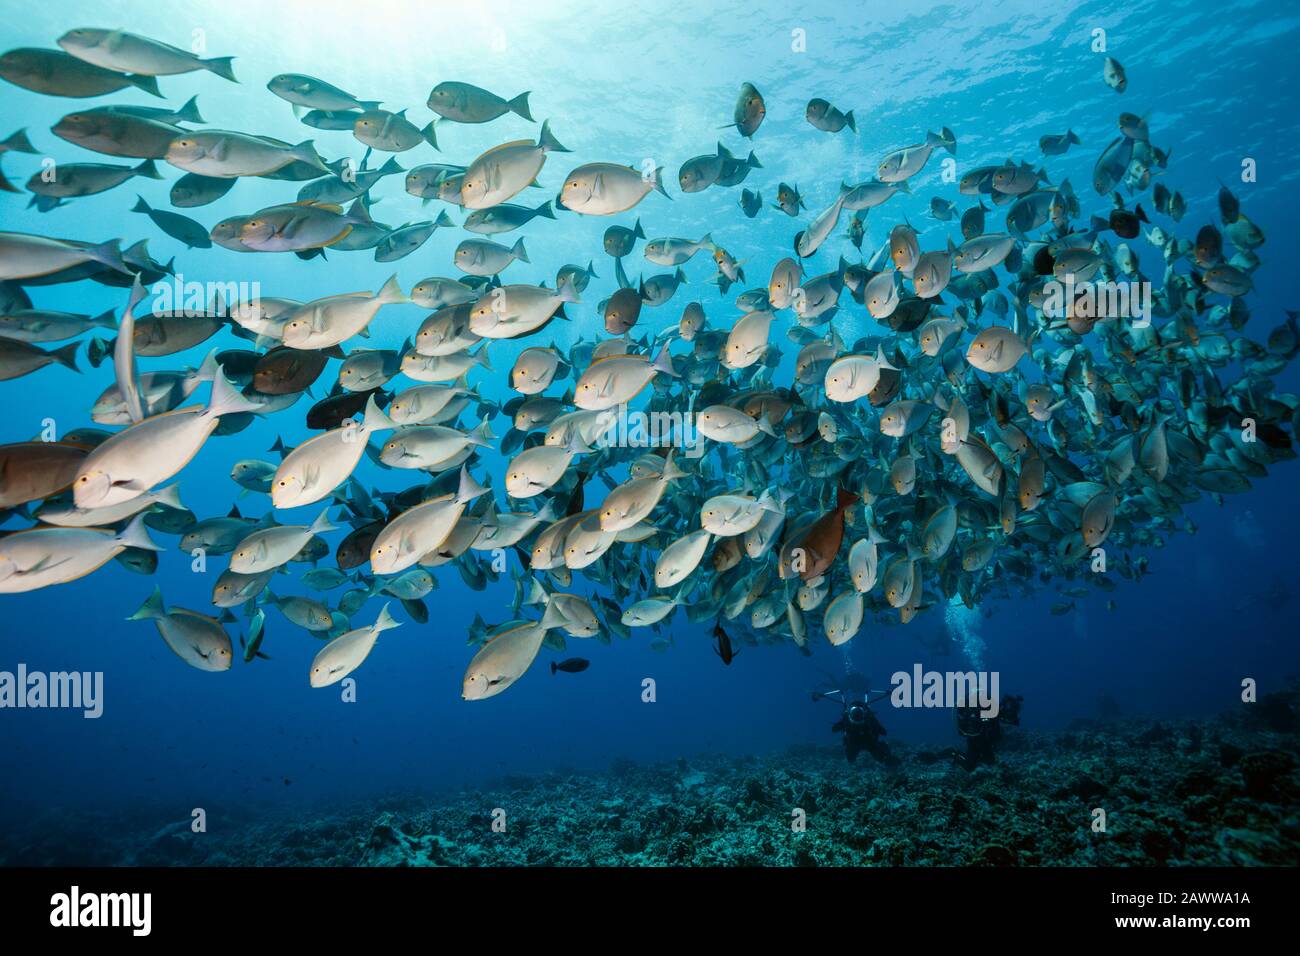 Shoal De Surgeonfish Allongé, Acanthurus Mata, Fakarava, Tuamotu Archipel, Polynésie Française Banque D'Images